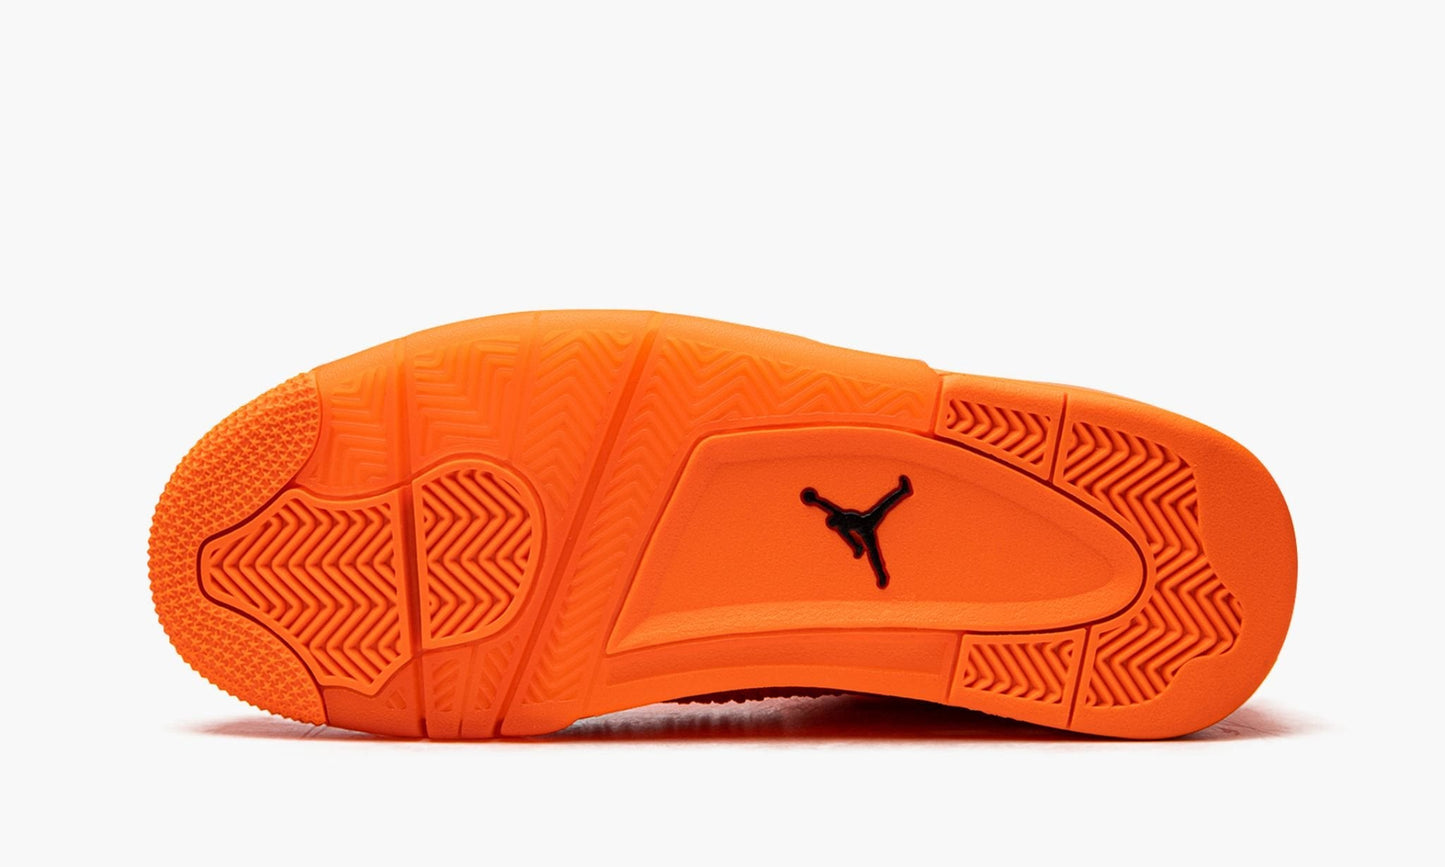 Air Jordan 4 Retro FK "Total Orange"